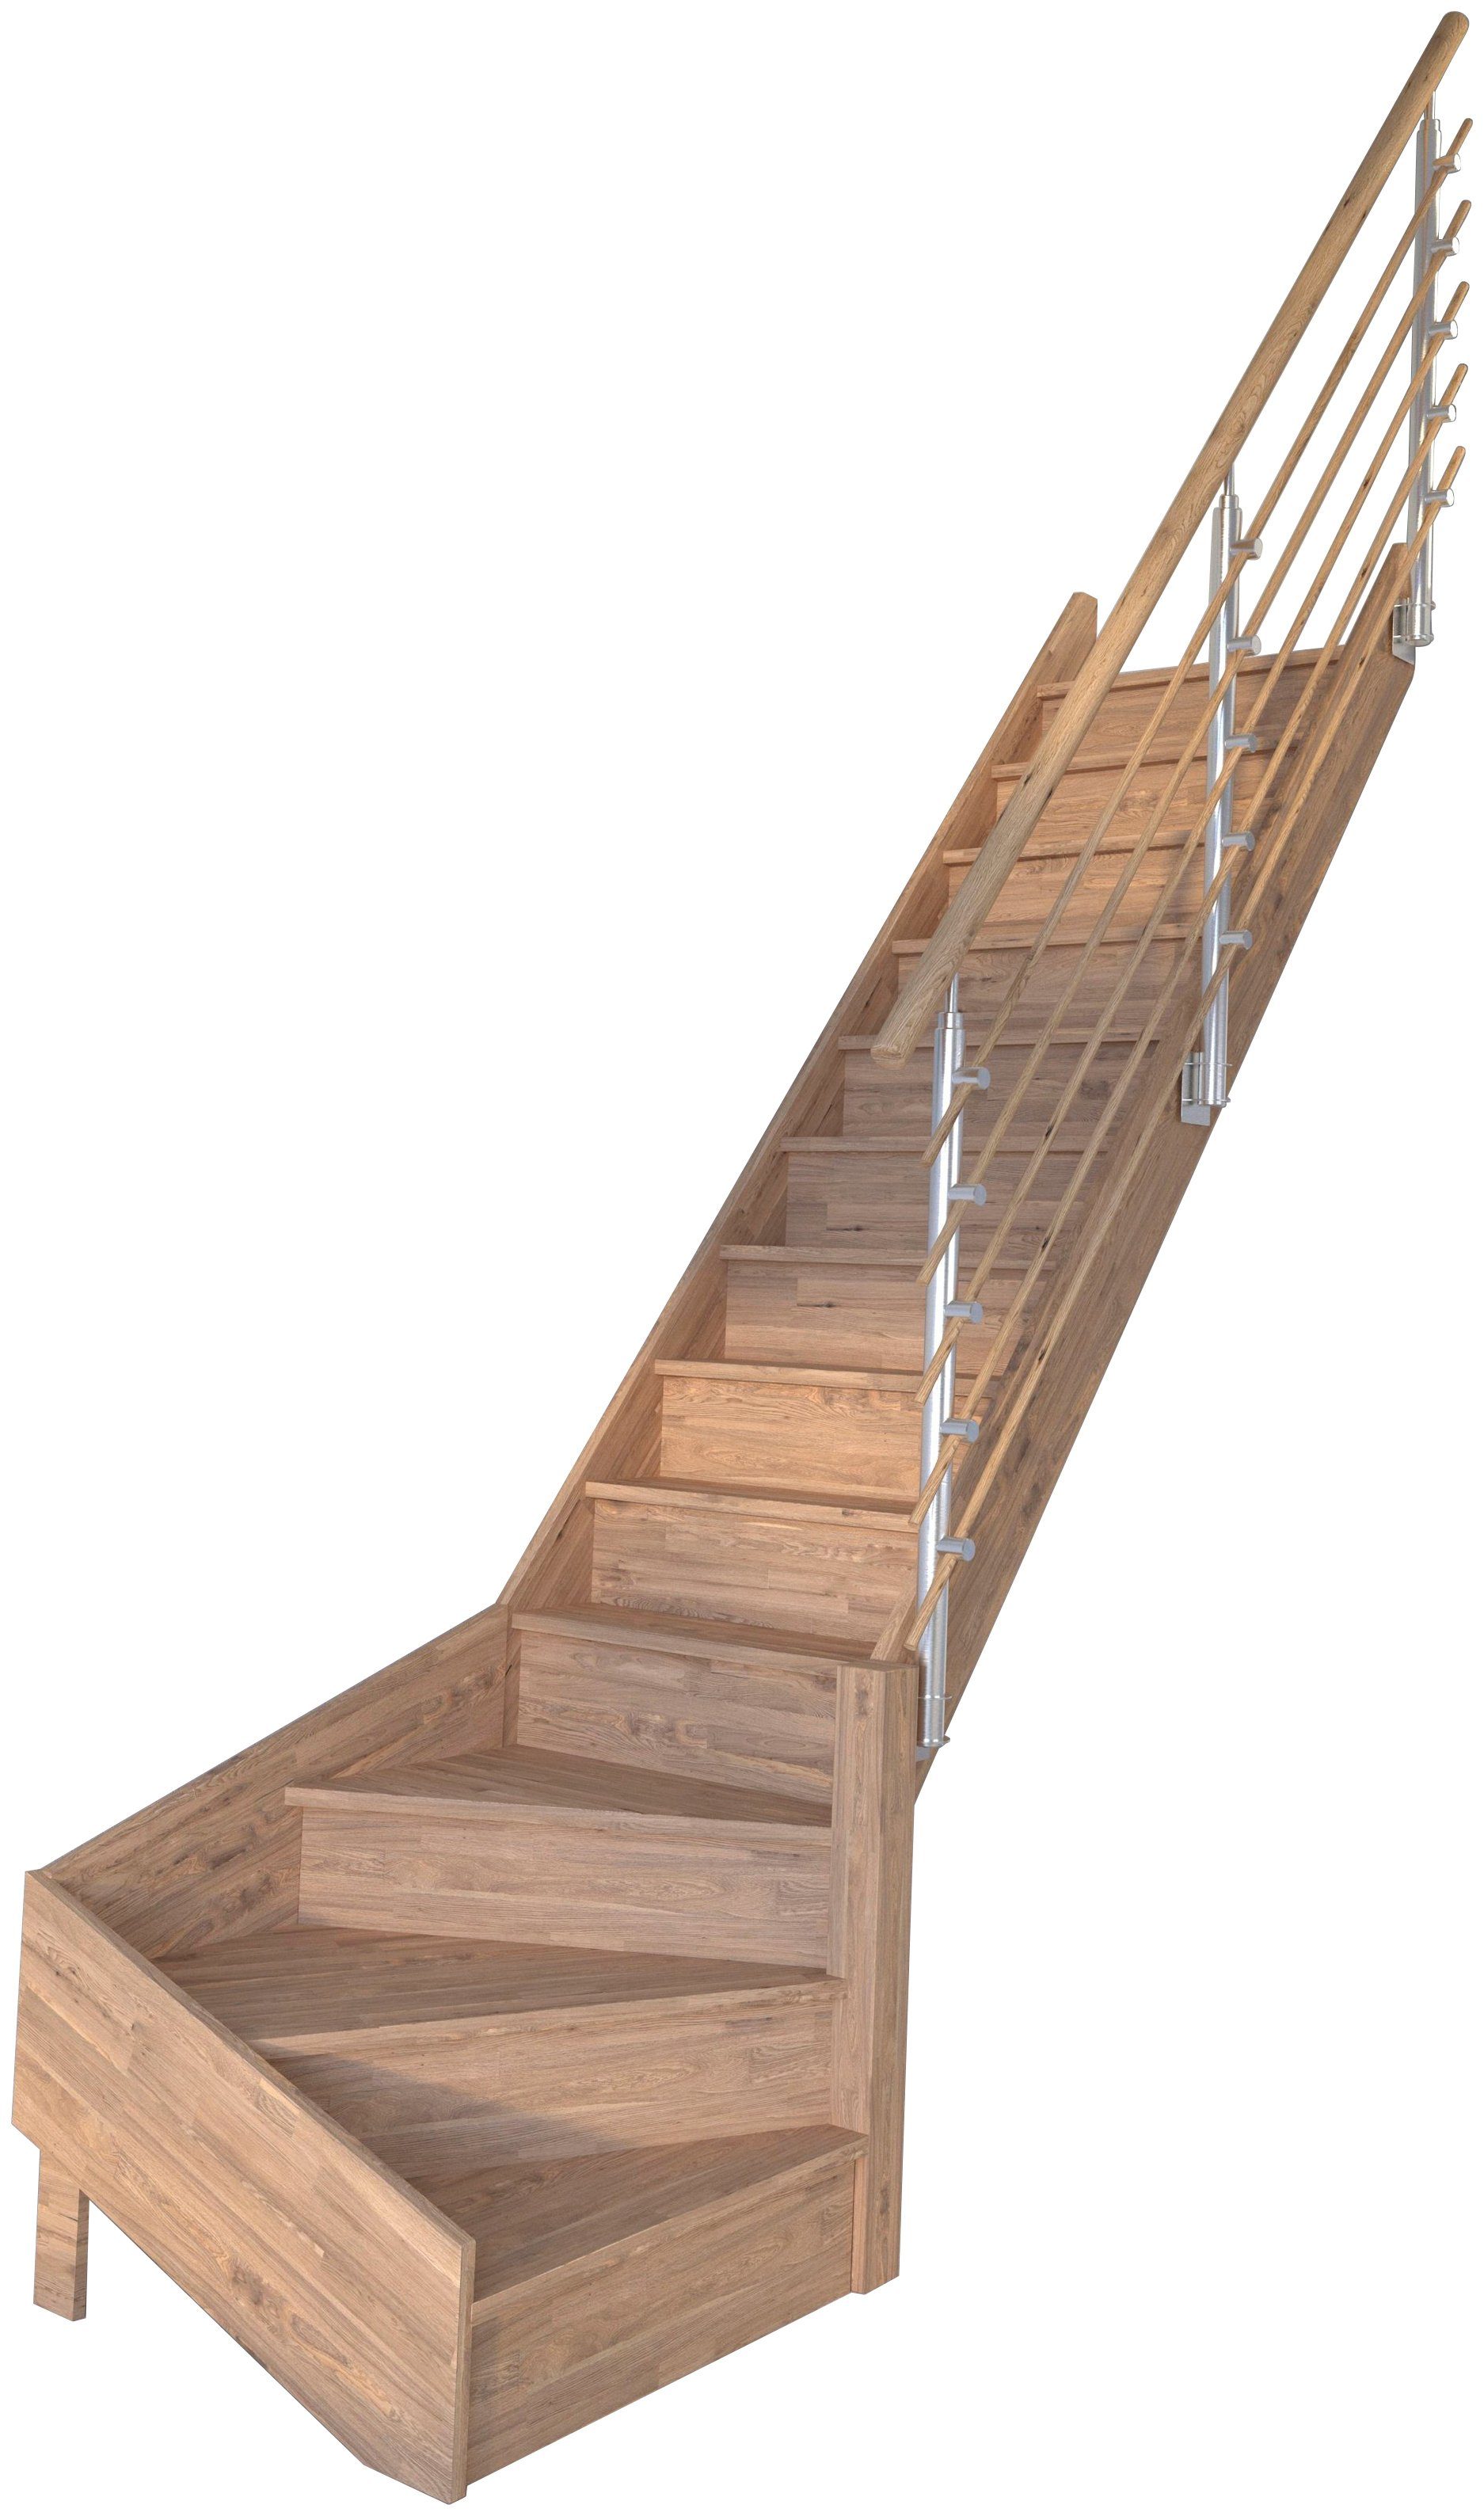 Starwood Raumspartreppe Massivholz Rhodos, Design-Geländer Holzrundstäbe, für Geschosshöhen bis 300 cm, Stufen geschlossen, gewendelt Rechts, Durchgehende Wangenteile